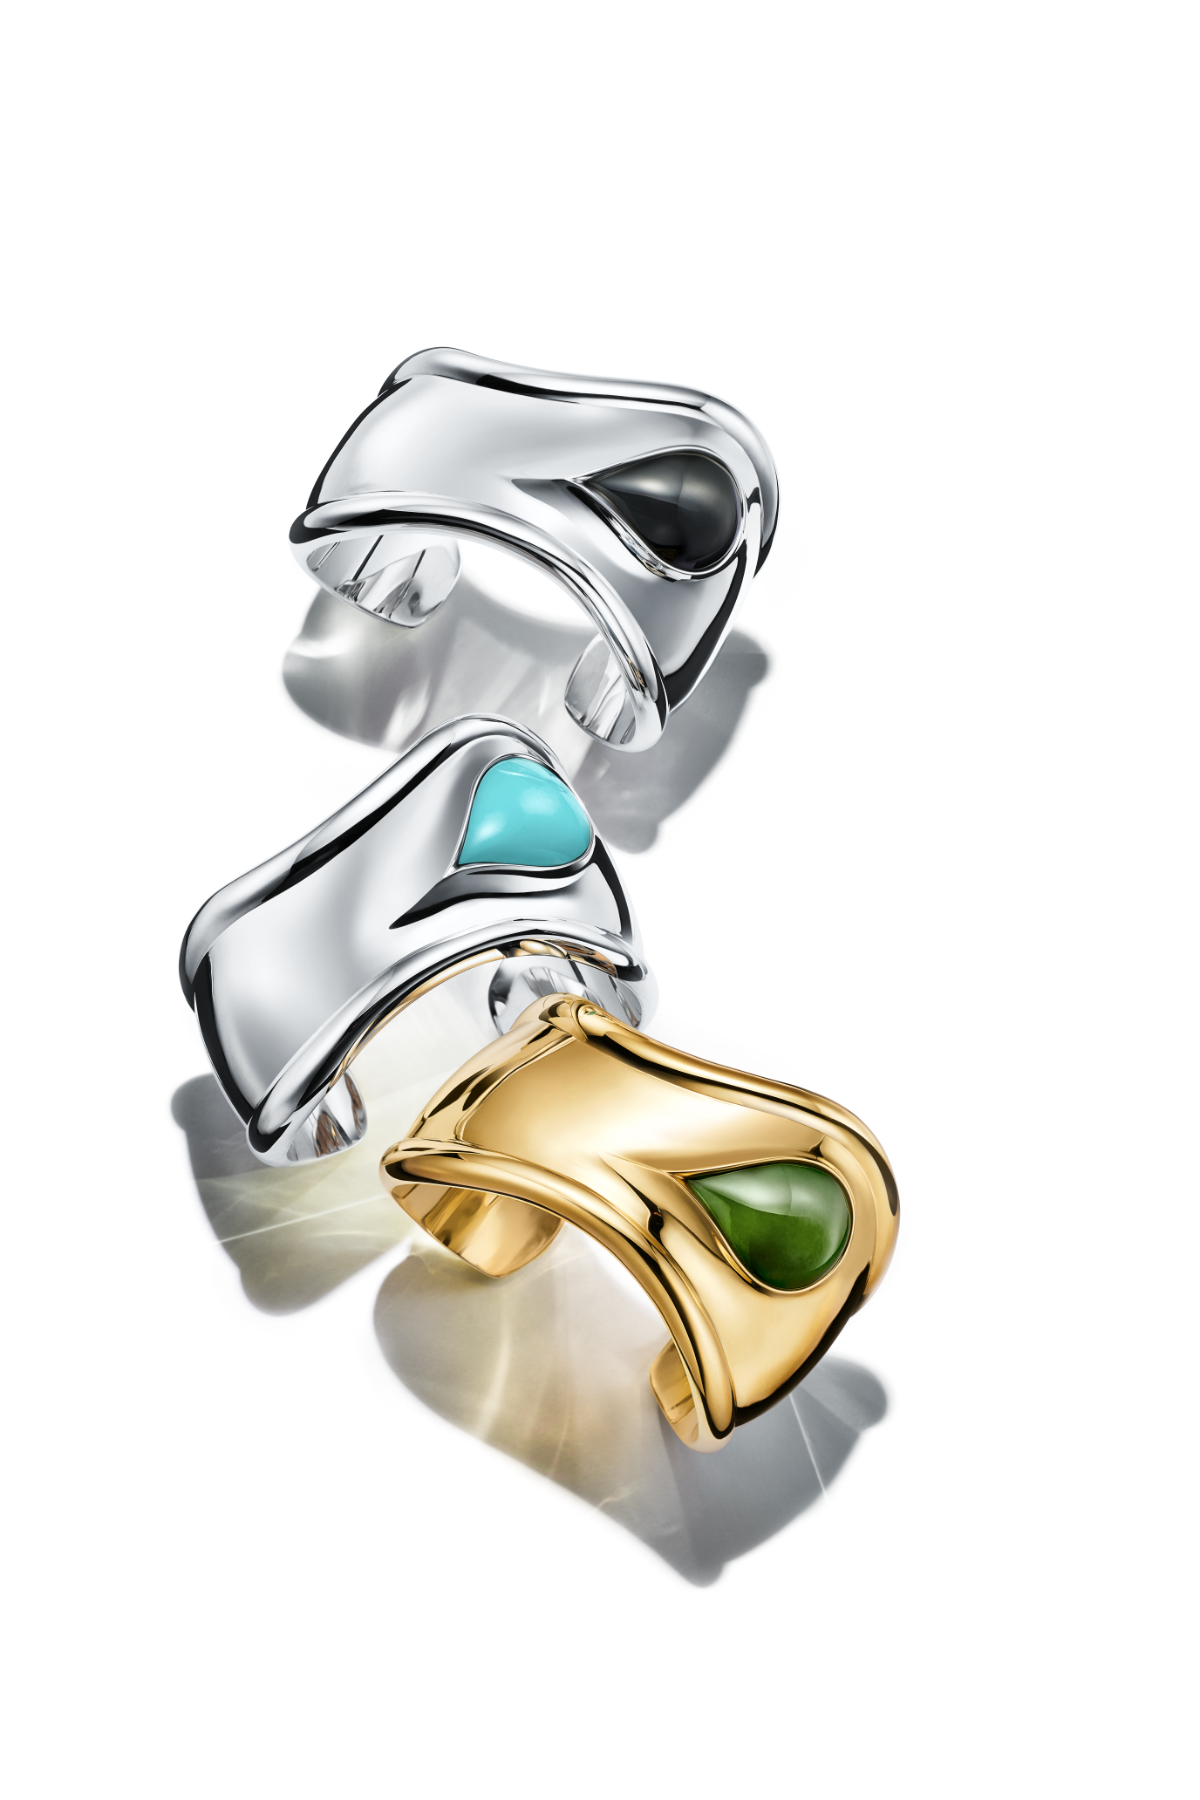 Tiffany & Co. Debuts a Special Edition of the Elsa Peretti® Bone Cuff